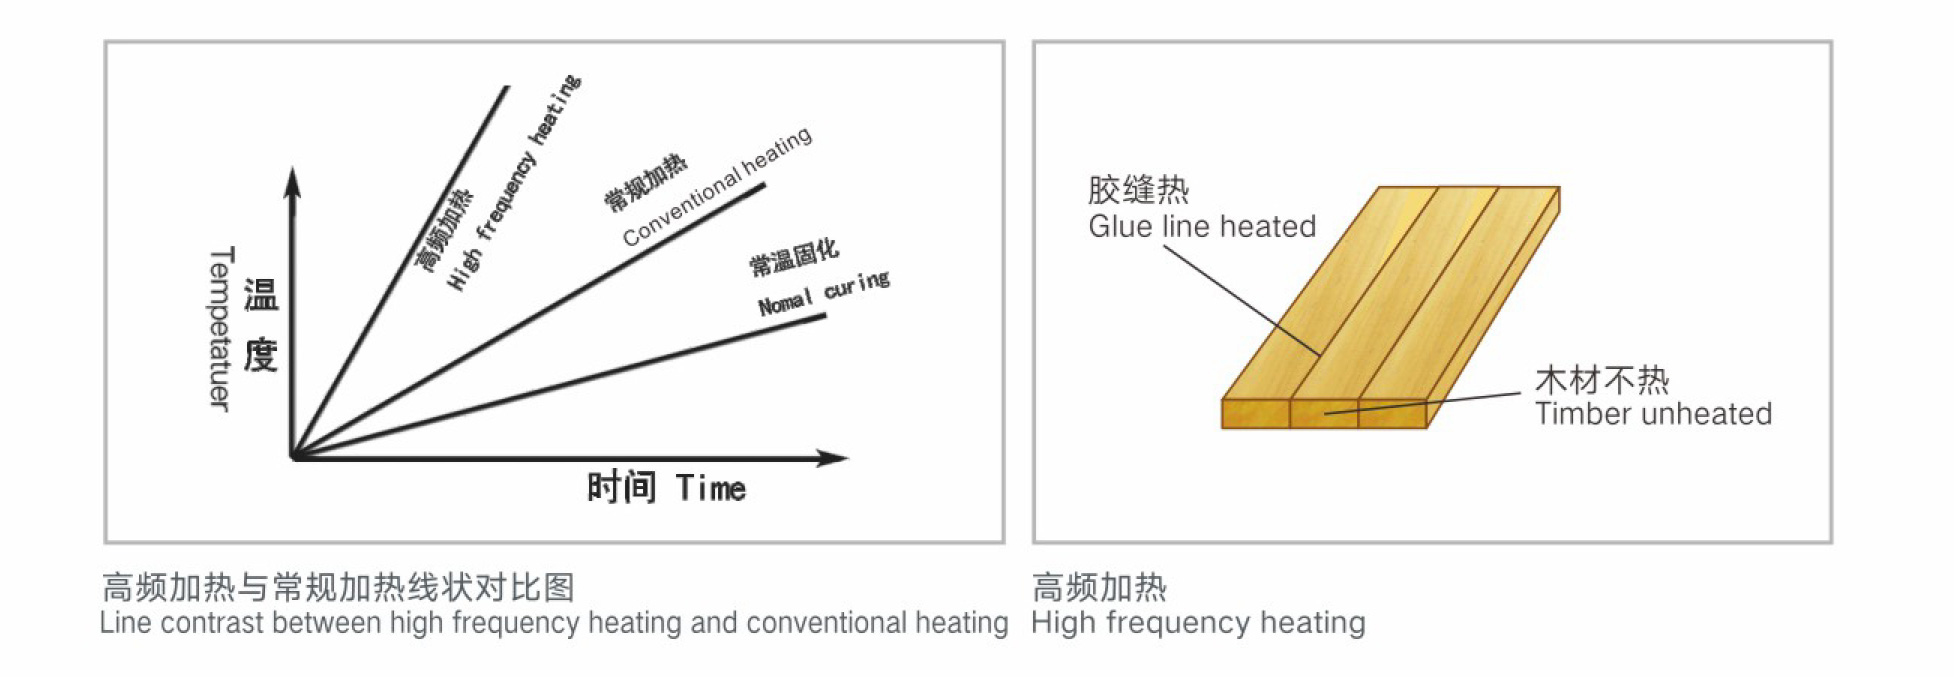 高頻加熱和常規加熱的對比圖